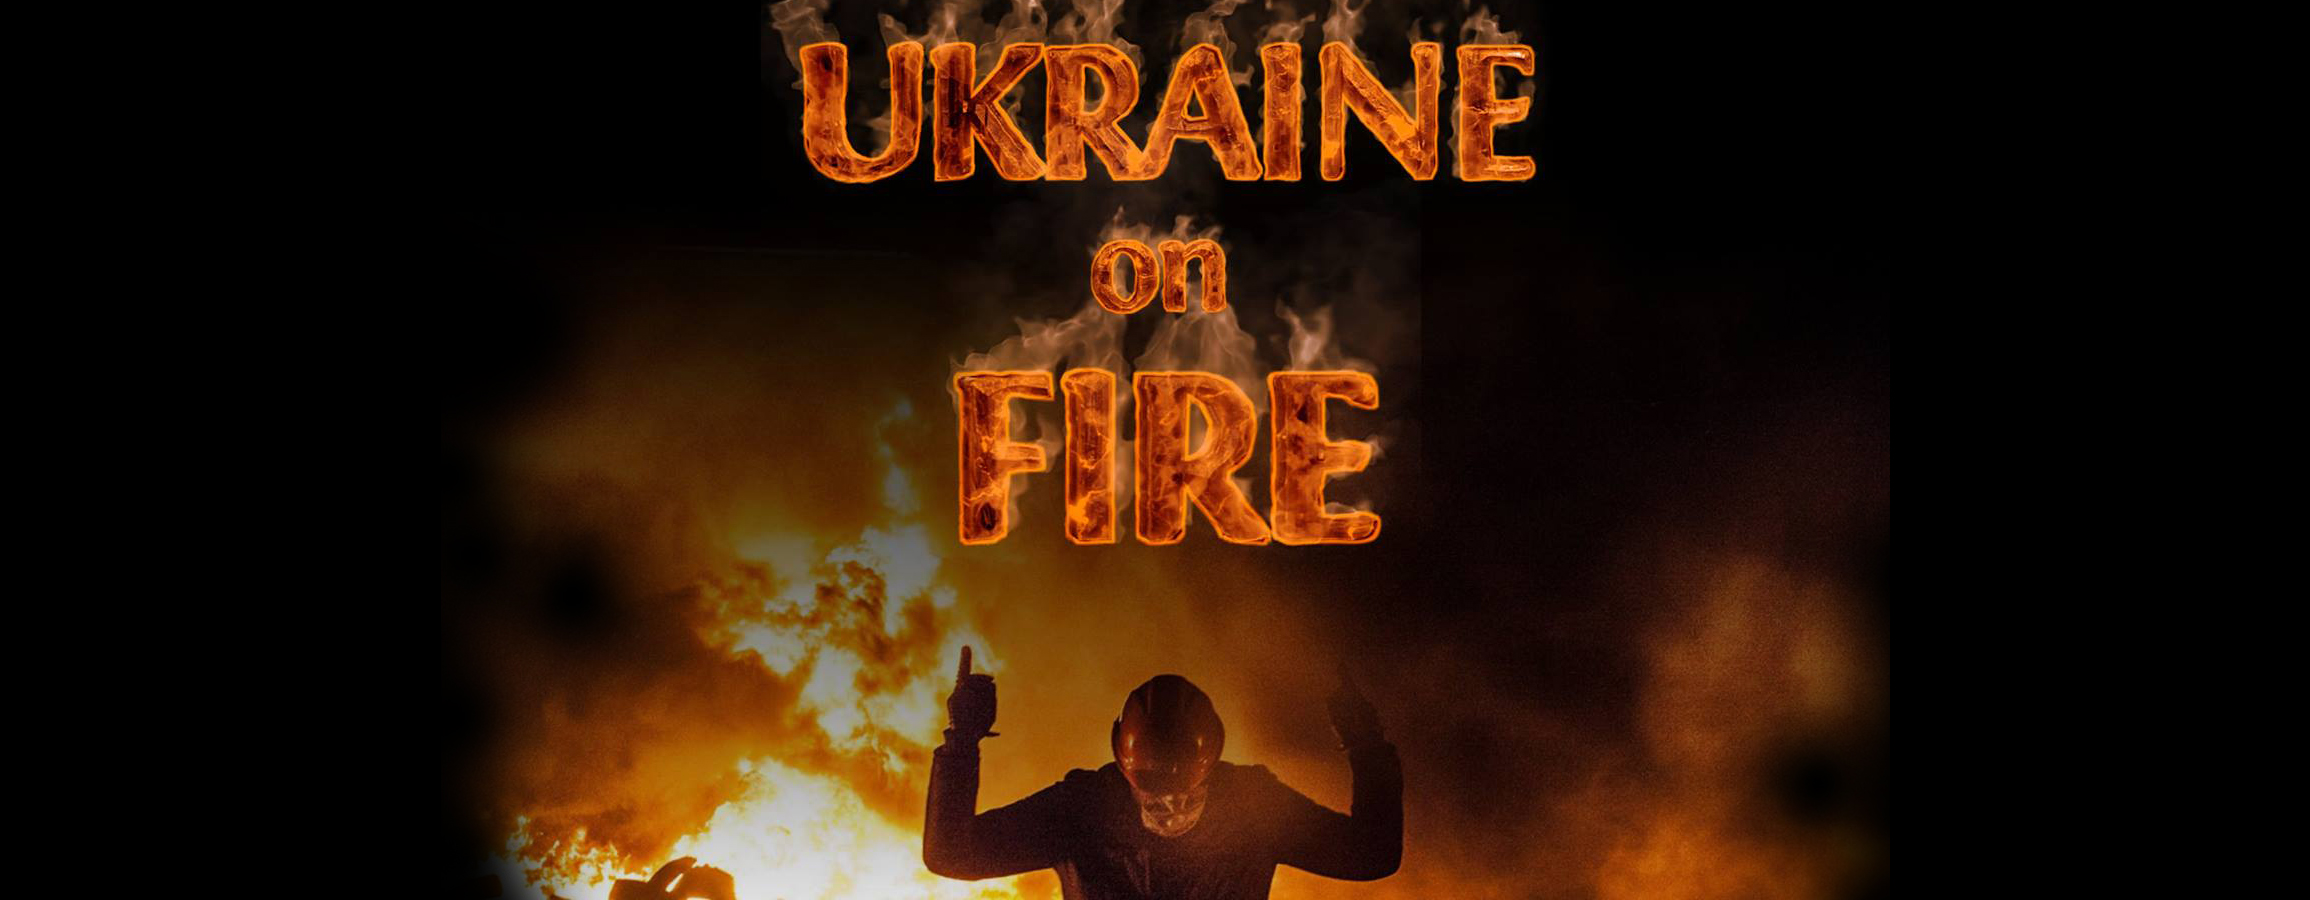 Resultado de imagen para documental “Ukraine on Fire oliver Stone